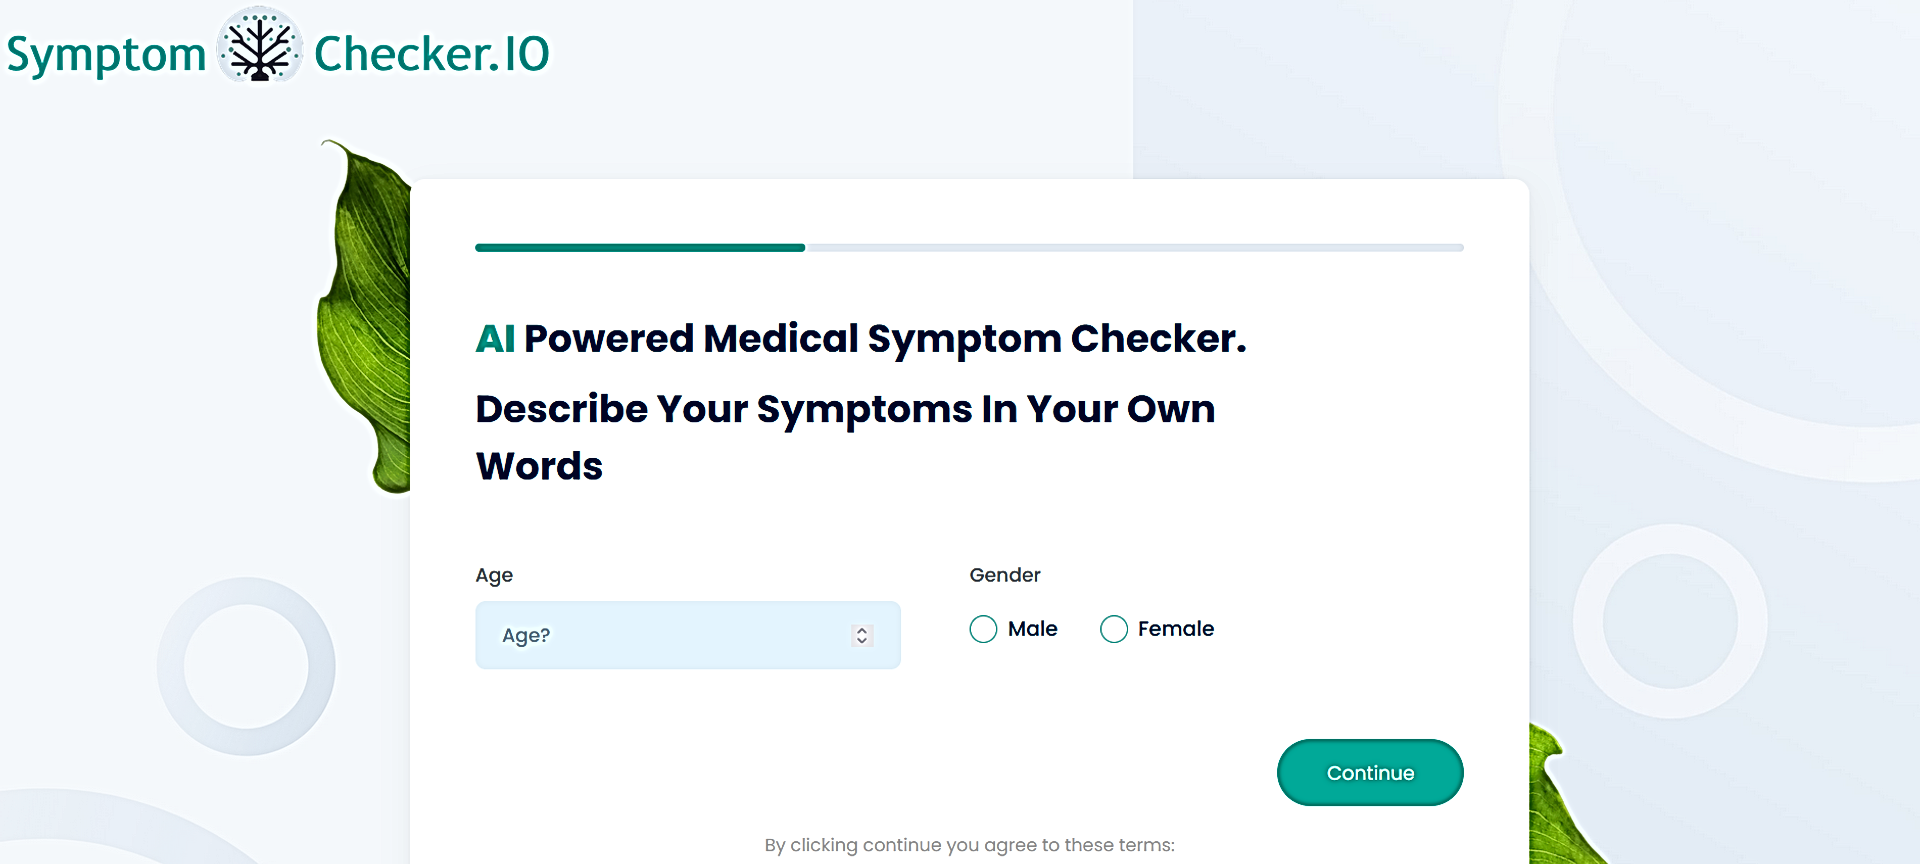 SymptomChecker.io featured